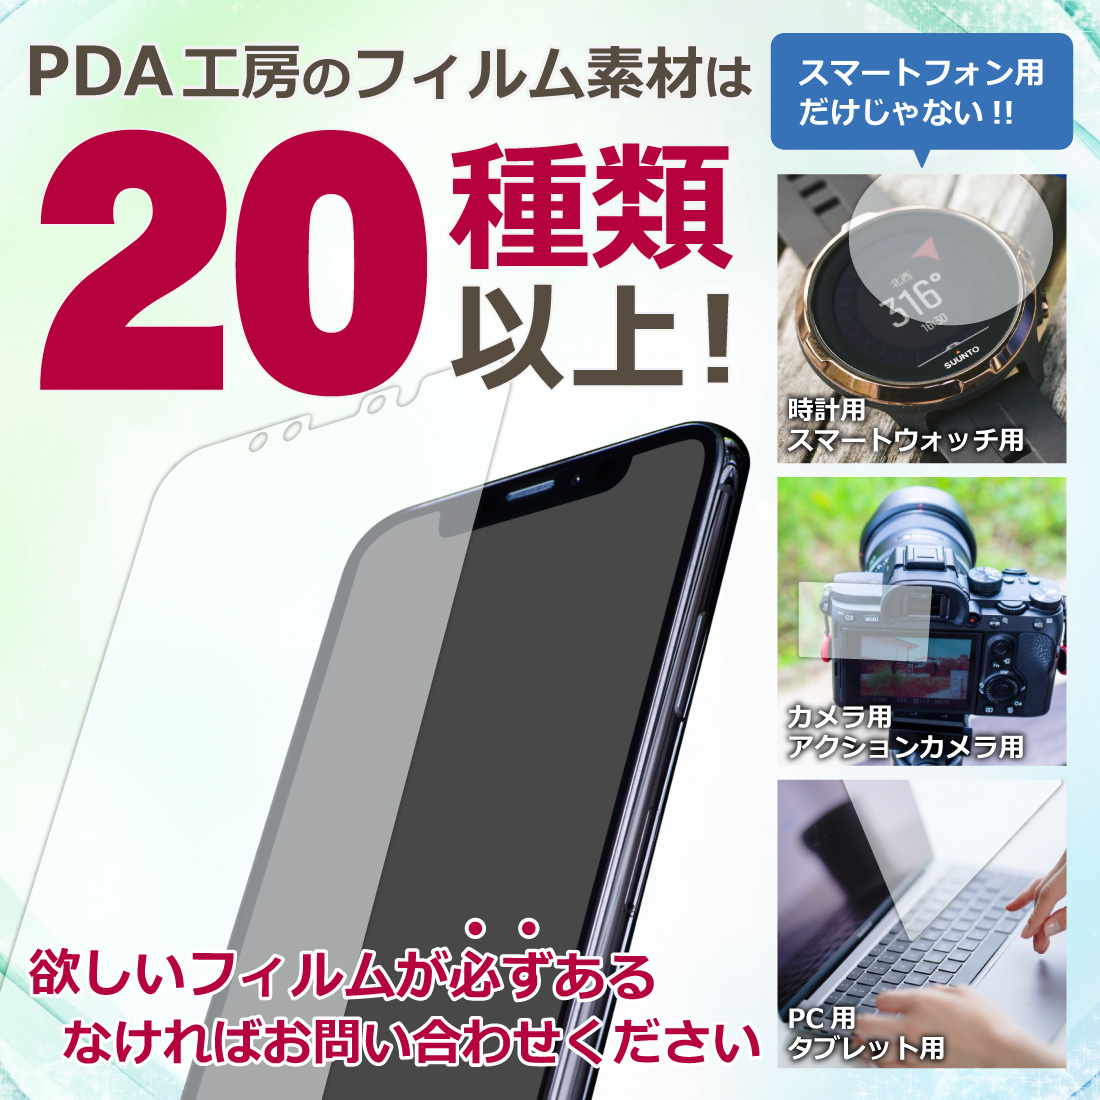 XPS 17 (9730) 保護フィルム【各種】PDA工房 | ユニバーサルシステムズ